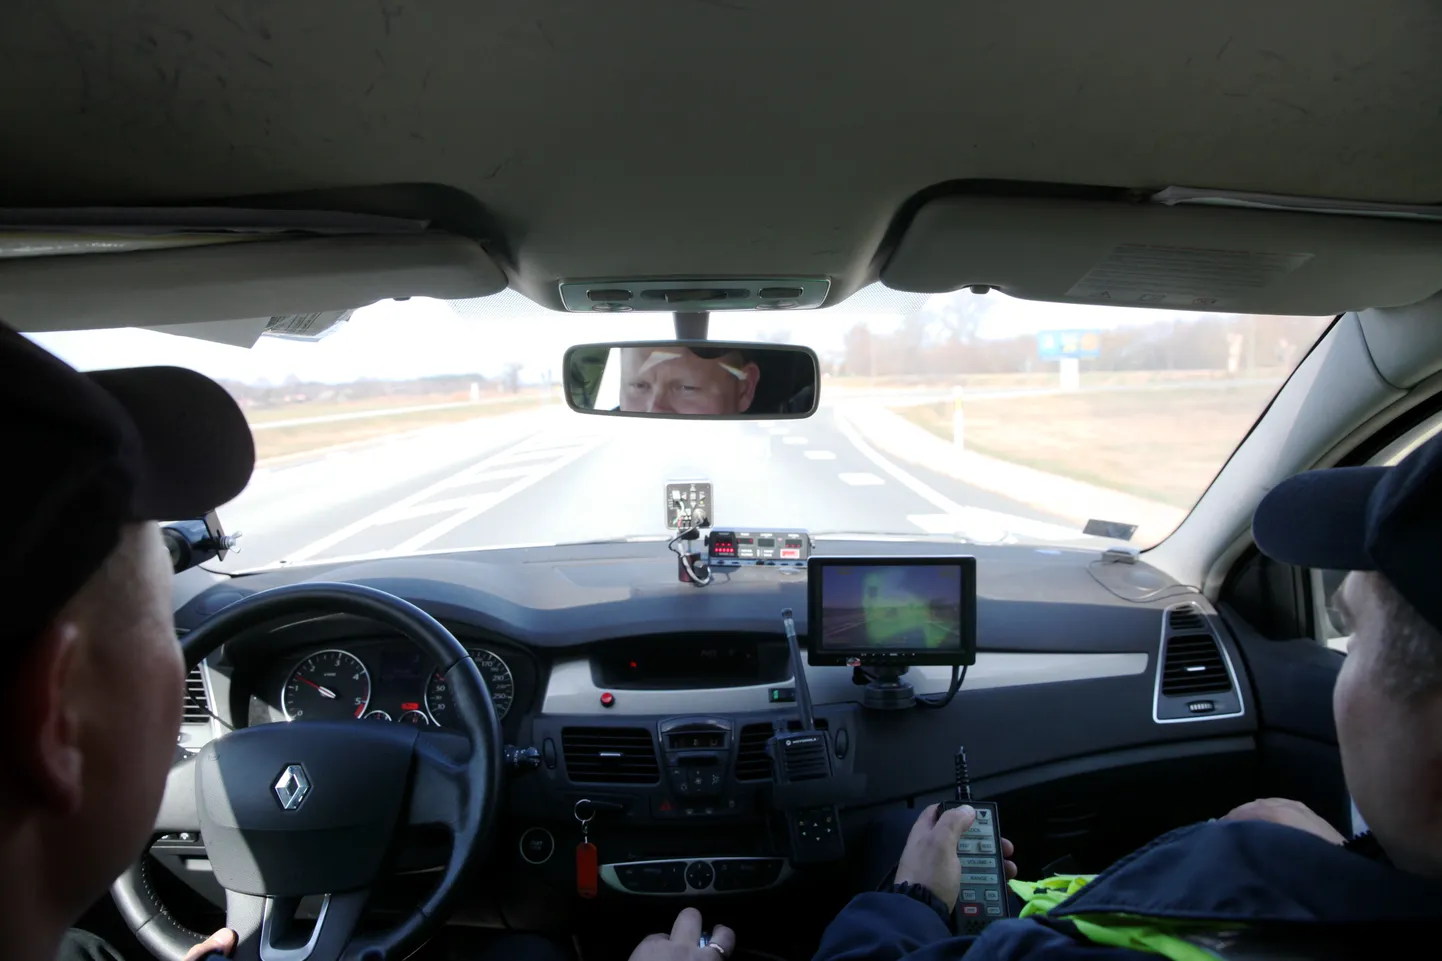 Valsts policijas ekipāža kontrolē atļautā braukšanas ātruma ievērošanu pie Baltezera ātruma kontroles maratona laikā, kas Latvijā norisinās pirmo reizi.